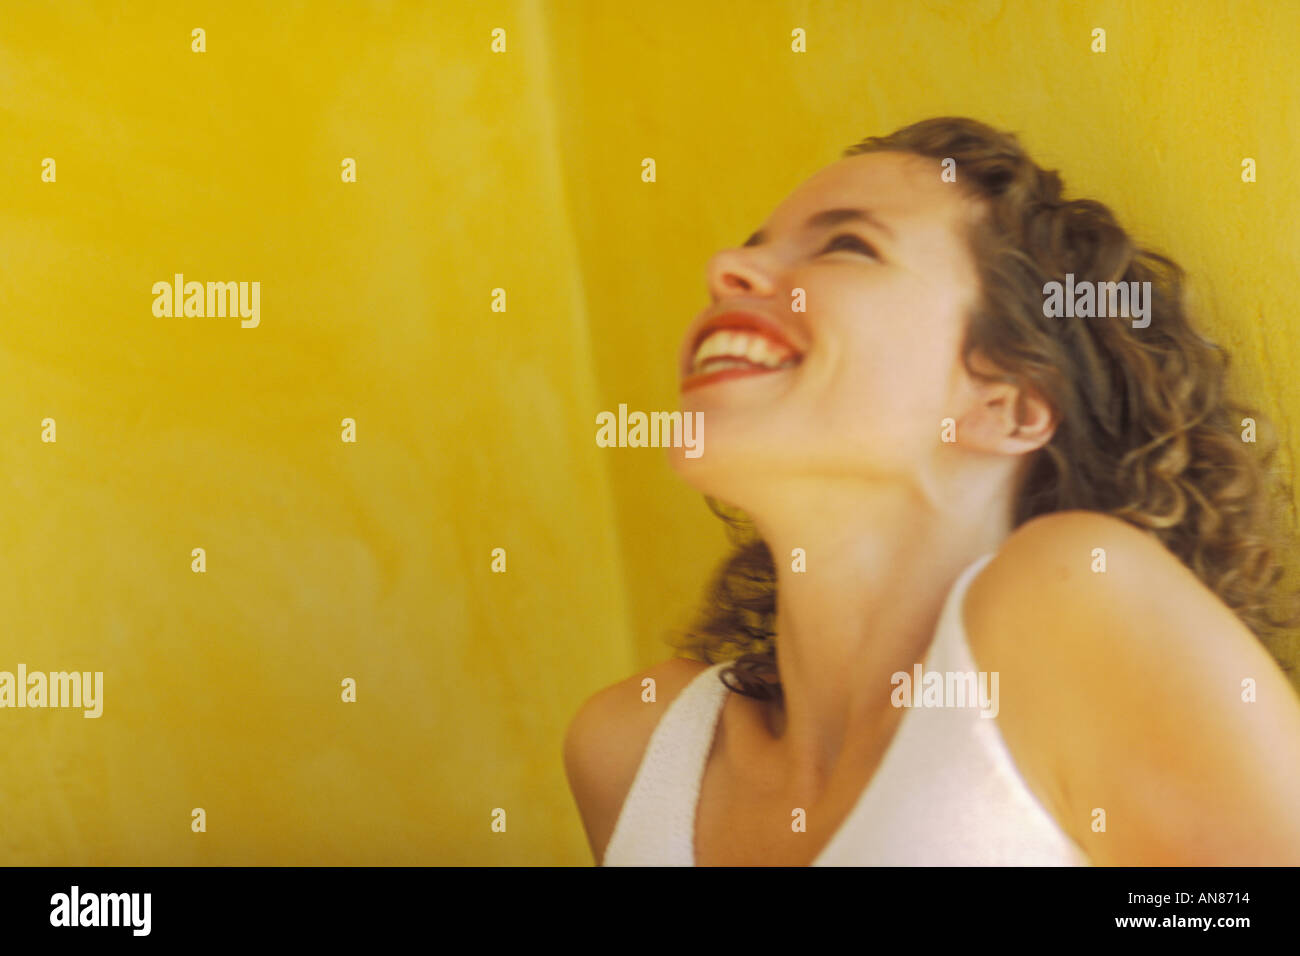 Ritratto 27 anno di età mista femmina ispanica ridere contro la parete gialla Foto Stock